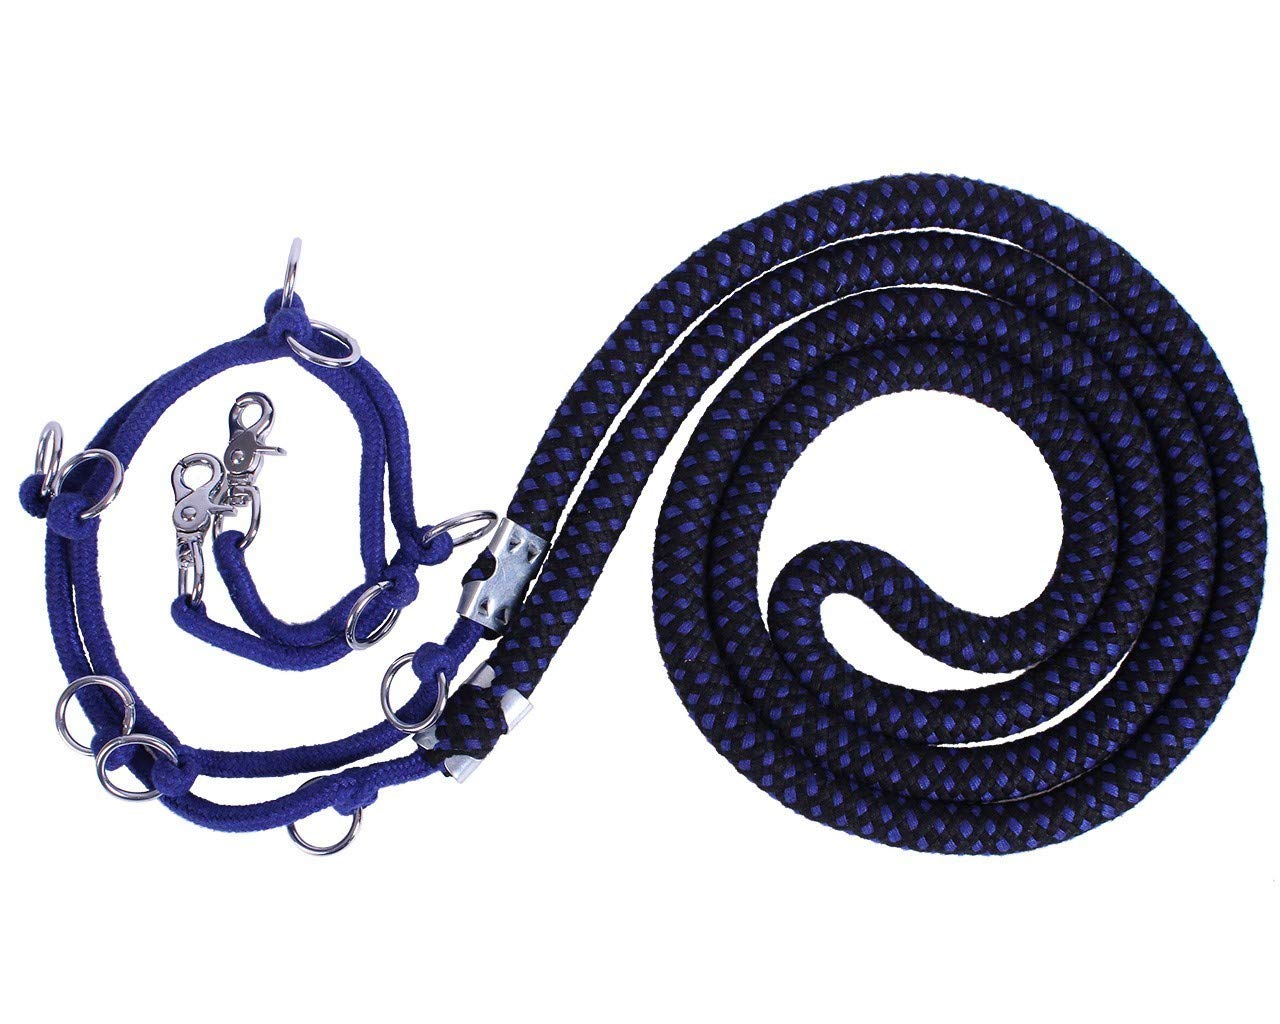 QHP Longierstrick Longierhilfe Luxus mit Mehreren Ringen zur optimalen Einstellung (XL, Blau/Schwarz)